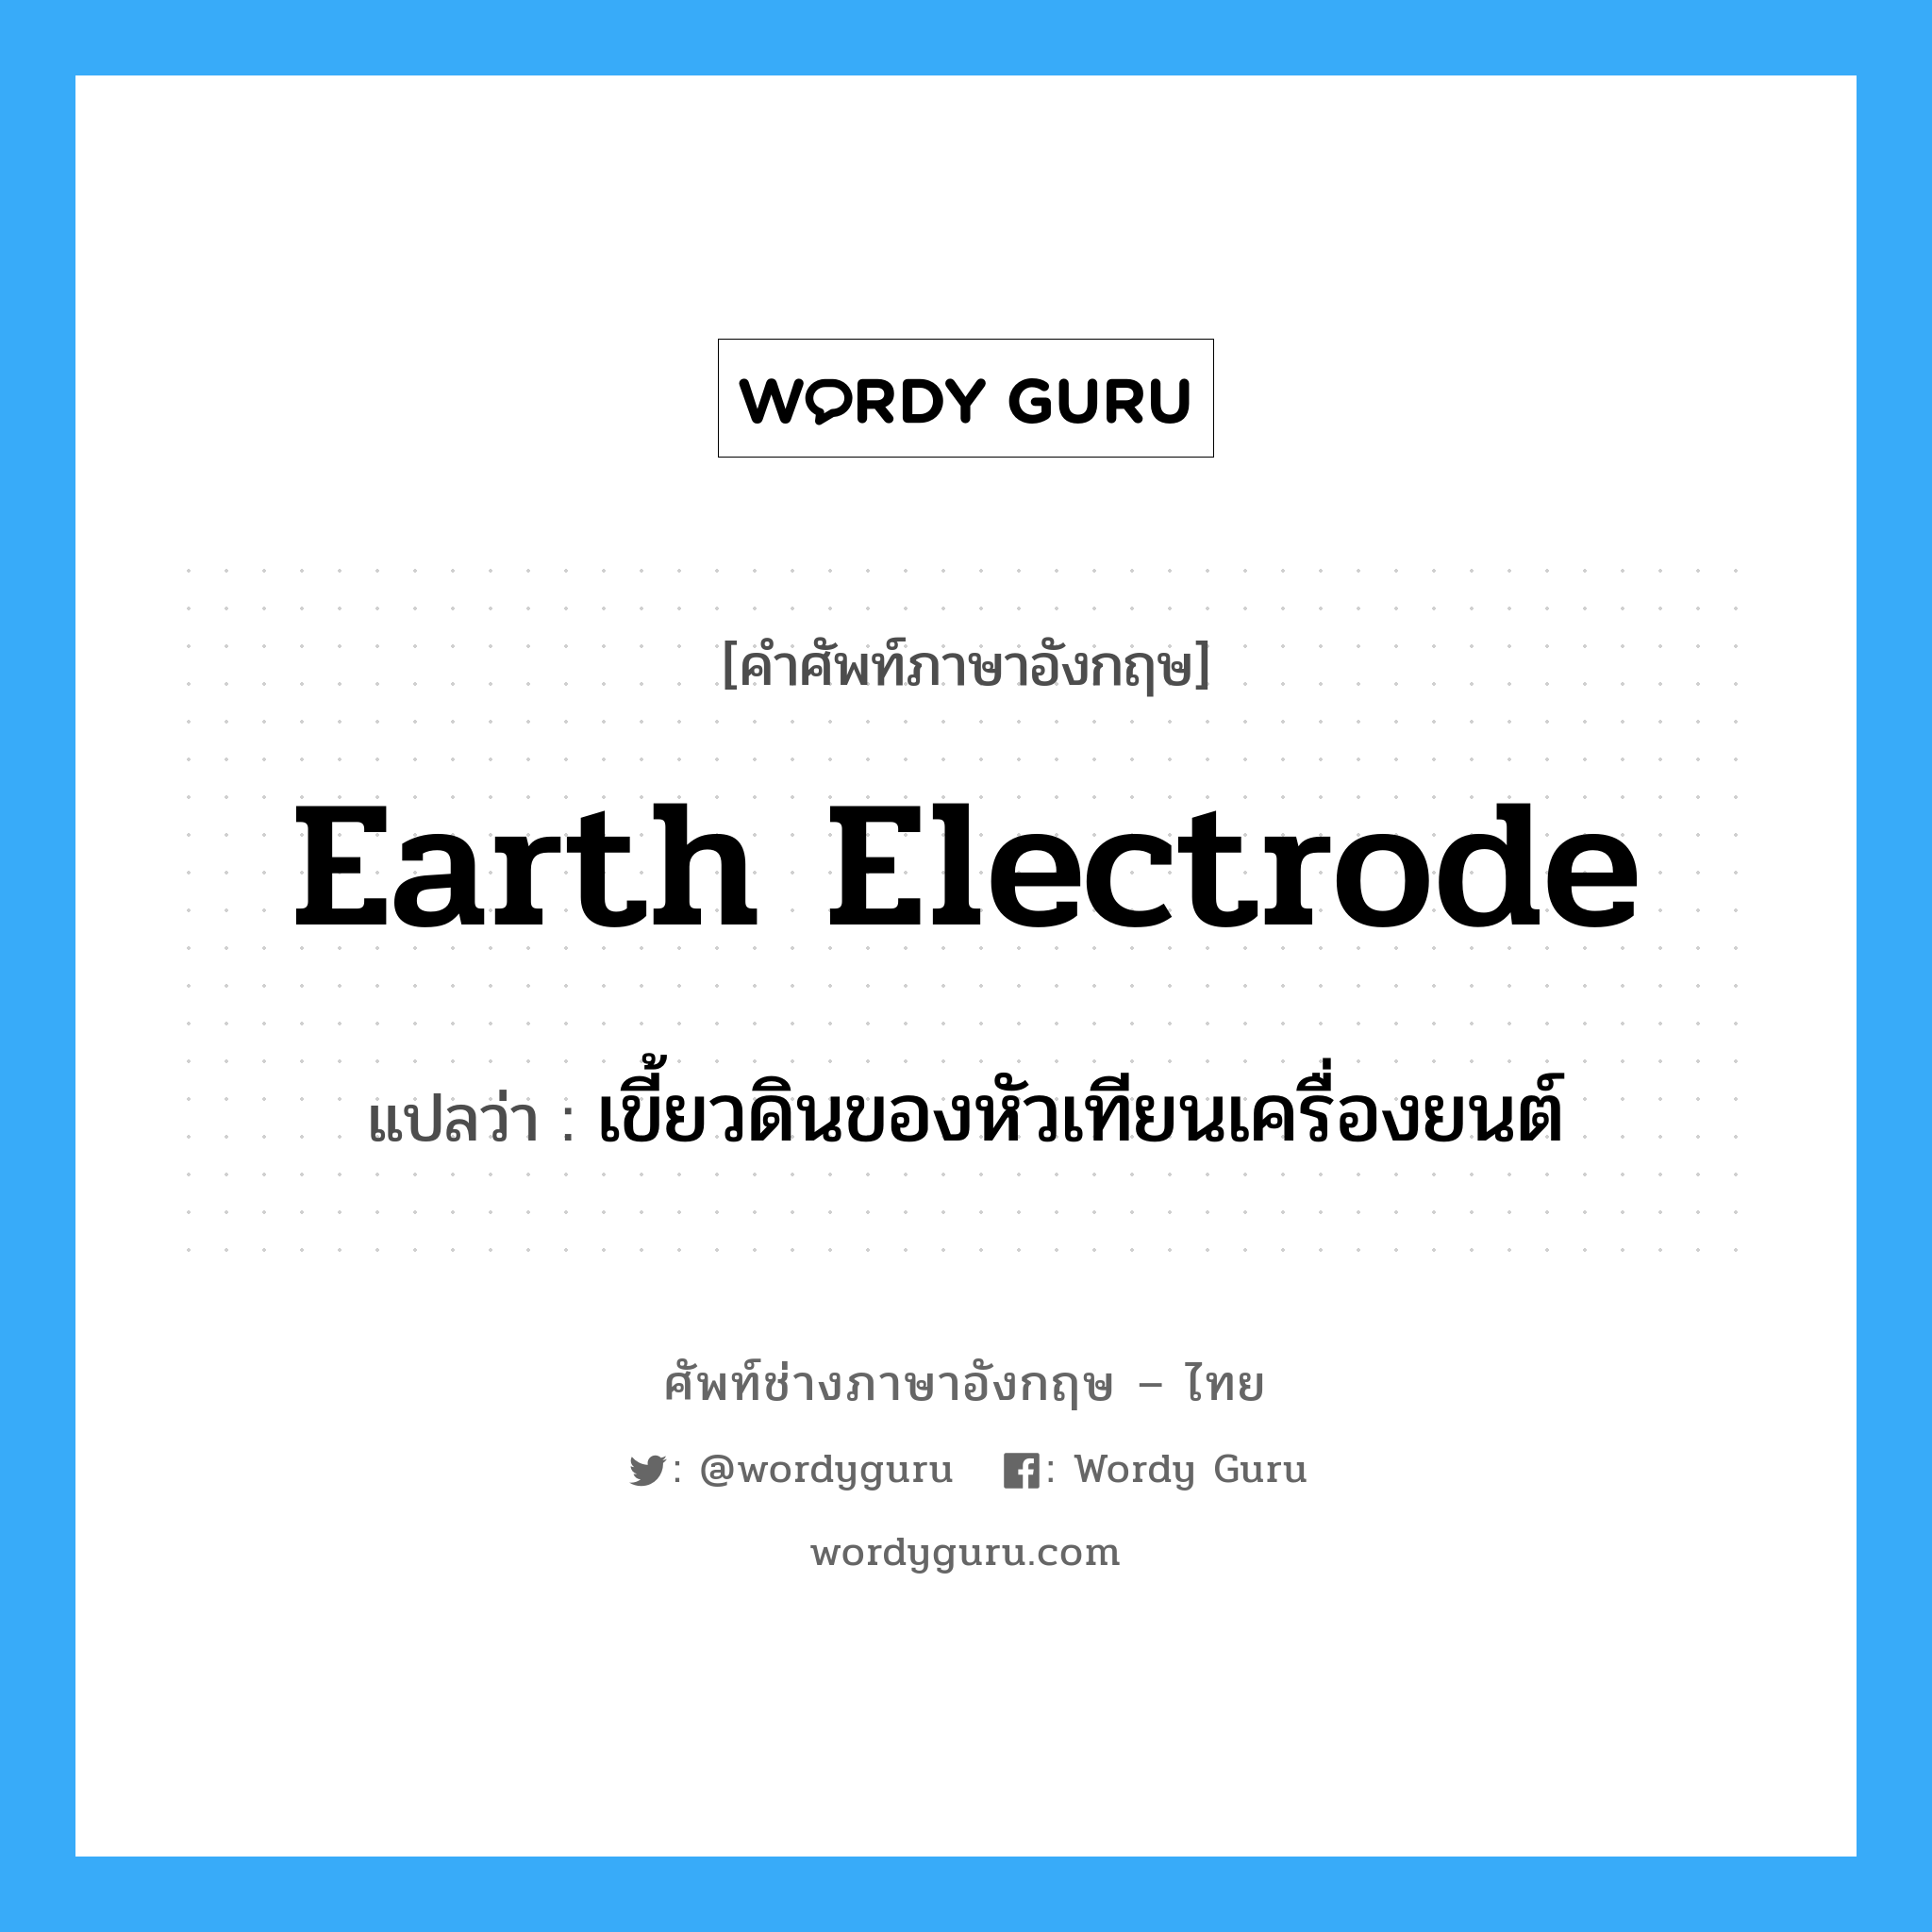 earth electrode แปลว่า?, คำศัพท์ช่างภาษาอังกฤษ - ไทย earth electrode คำศัพท์ภาษาอังกฤษ earth electrode แปลว่า เขี้ยวดินของหัวเทียนเครื่องยนต์